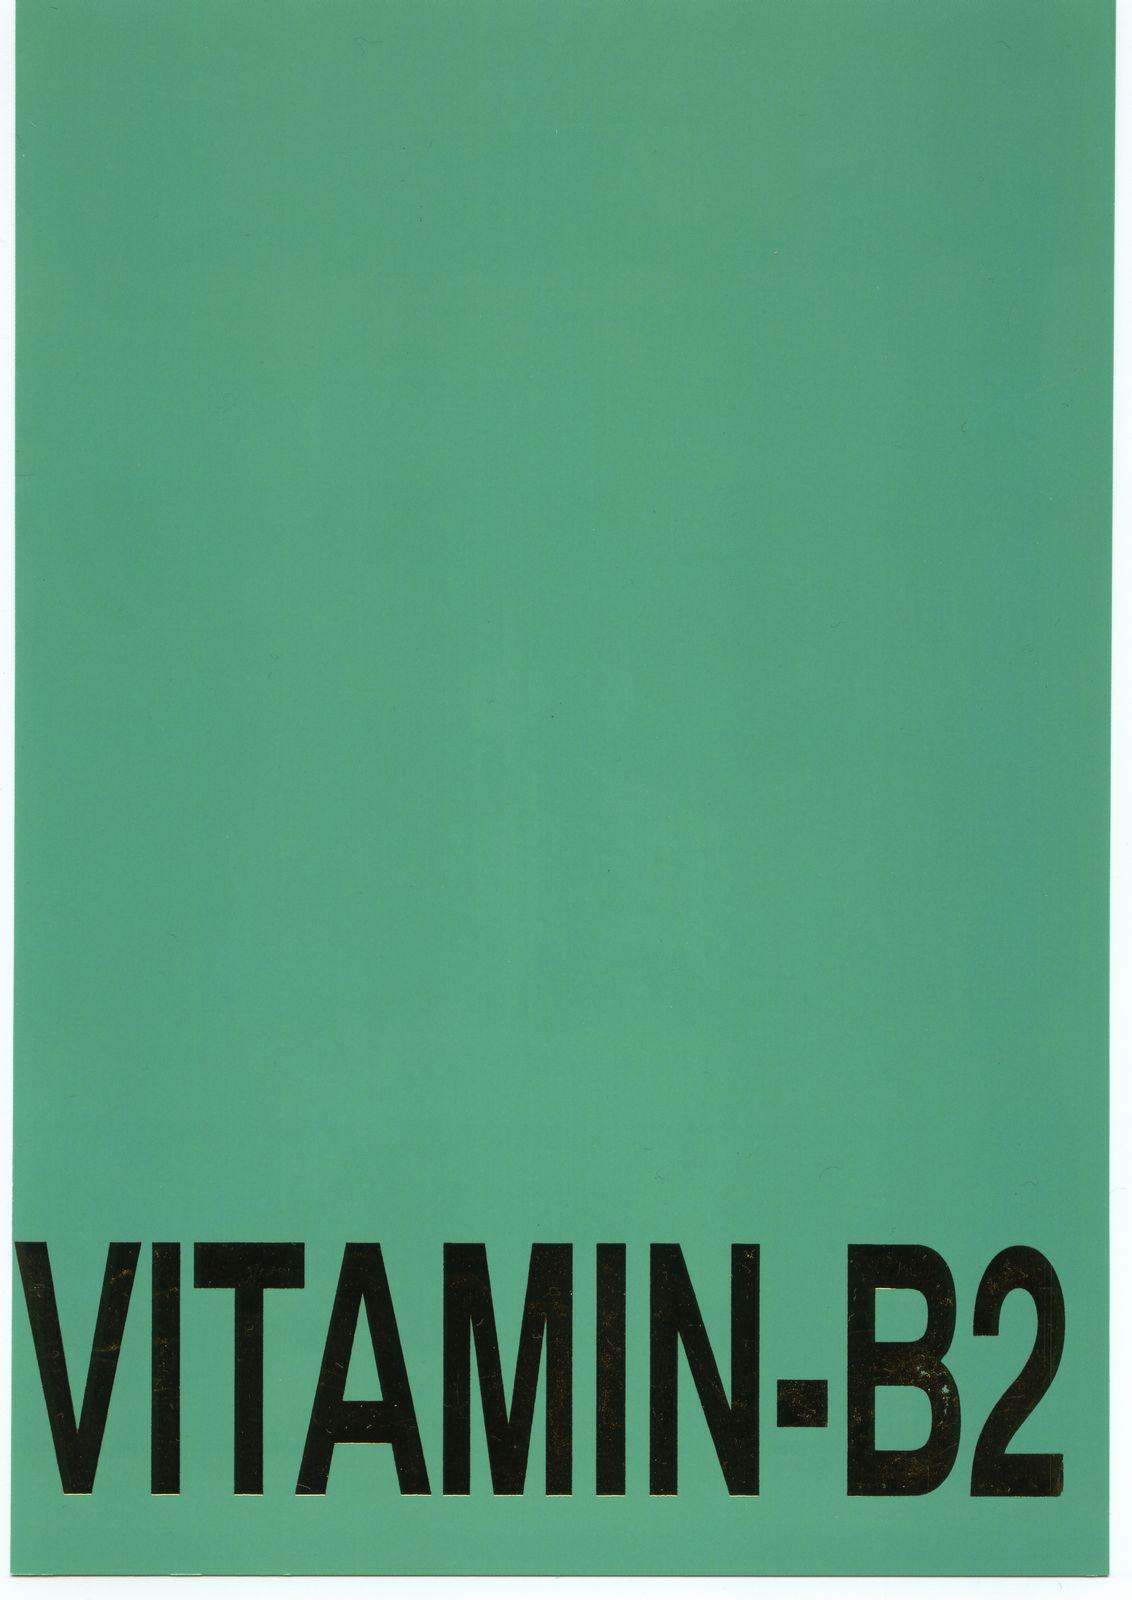 Vitamin-B2 73